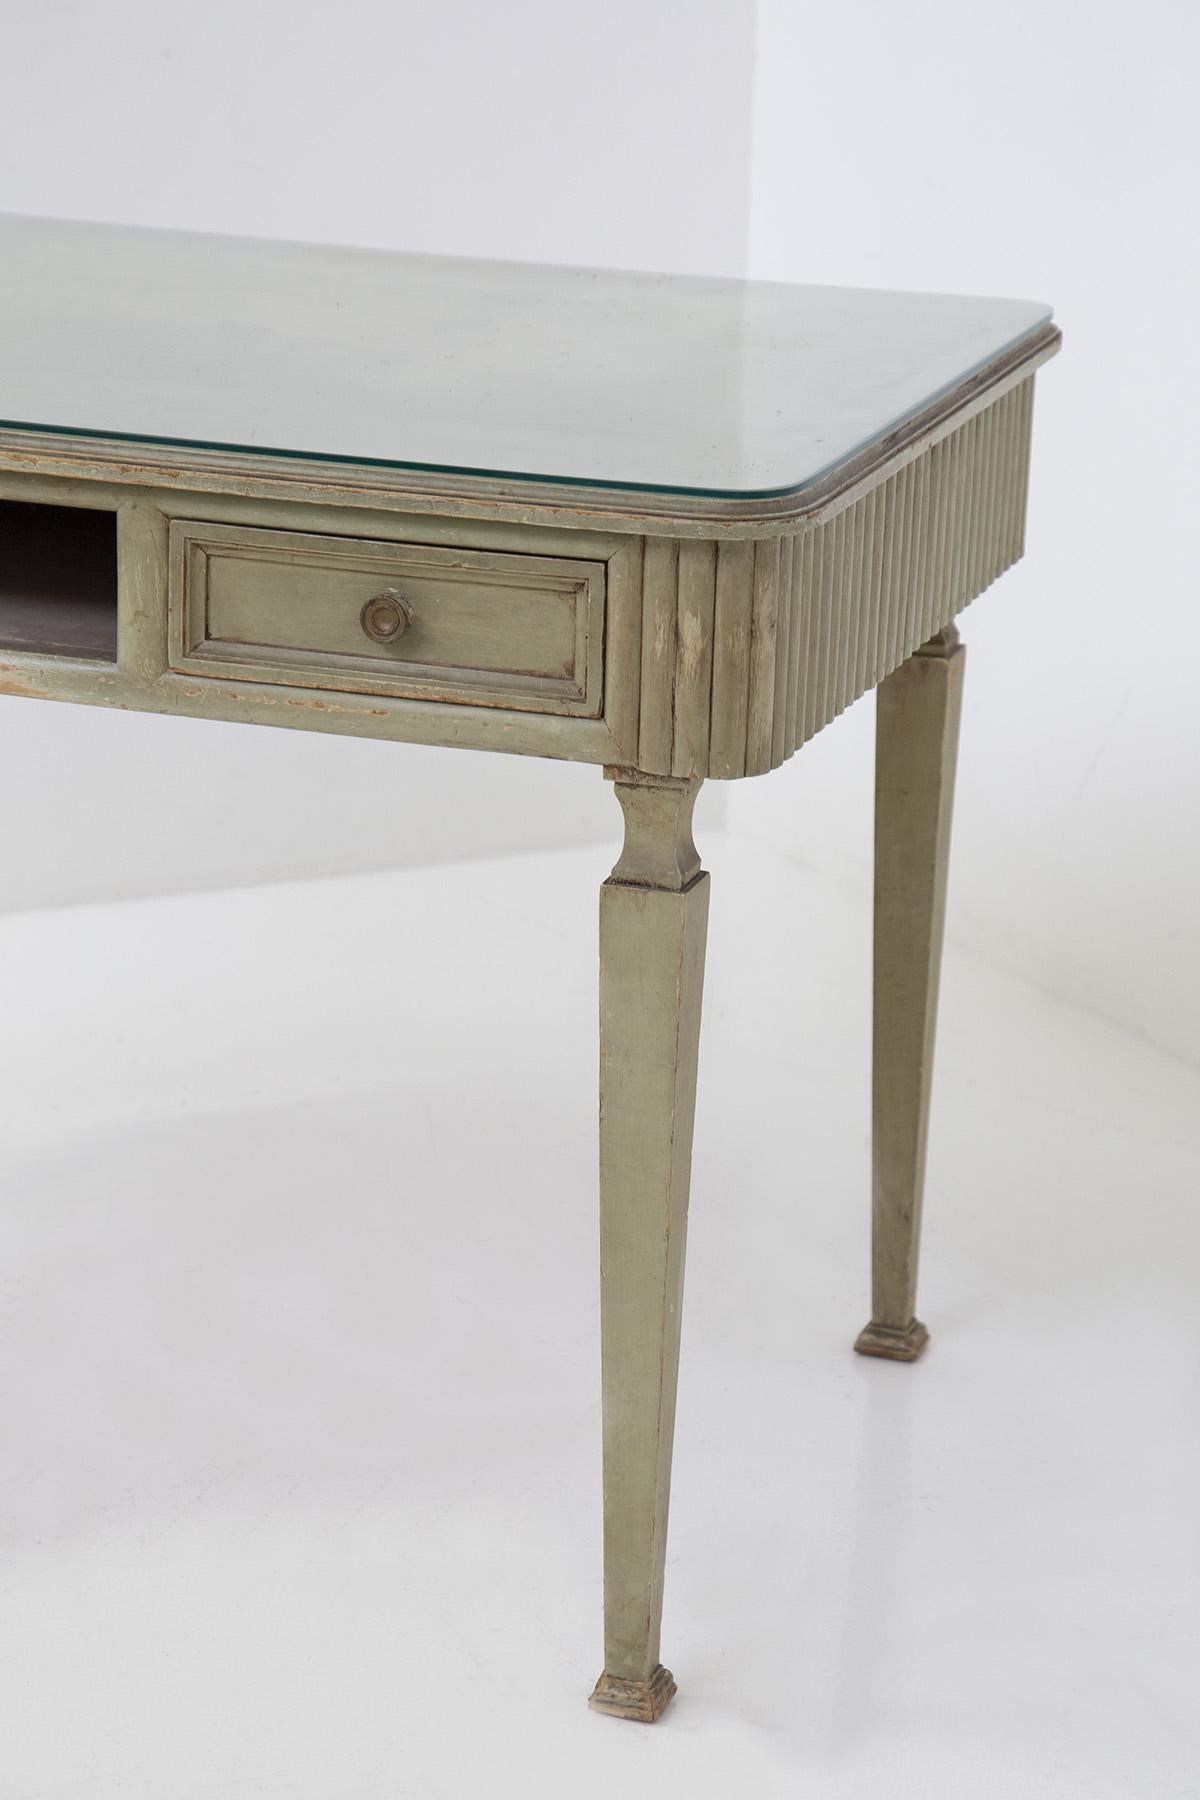 Schöne Französisch hölzernen Schreibtisch aus den späten 1800er Jahren Rustic Chic Zeitraum.
Der Schreibtisch ist komplett aus sehr elegantem olivgrünem Holz gefertigt, das auf verschiedene Arten bearbeitet wurde: es gibt die Meißeltechnik und auch